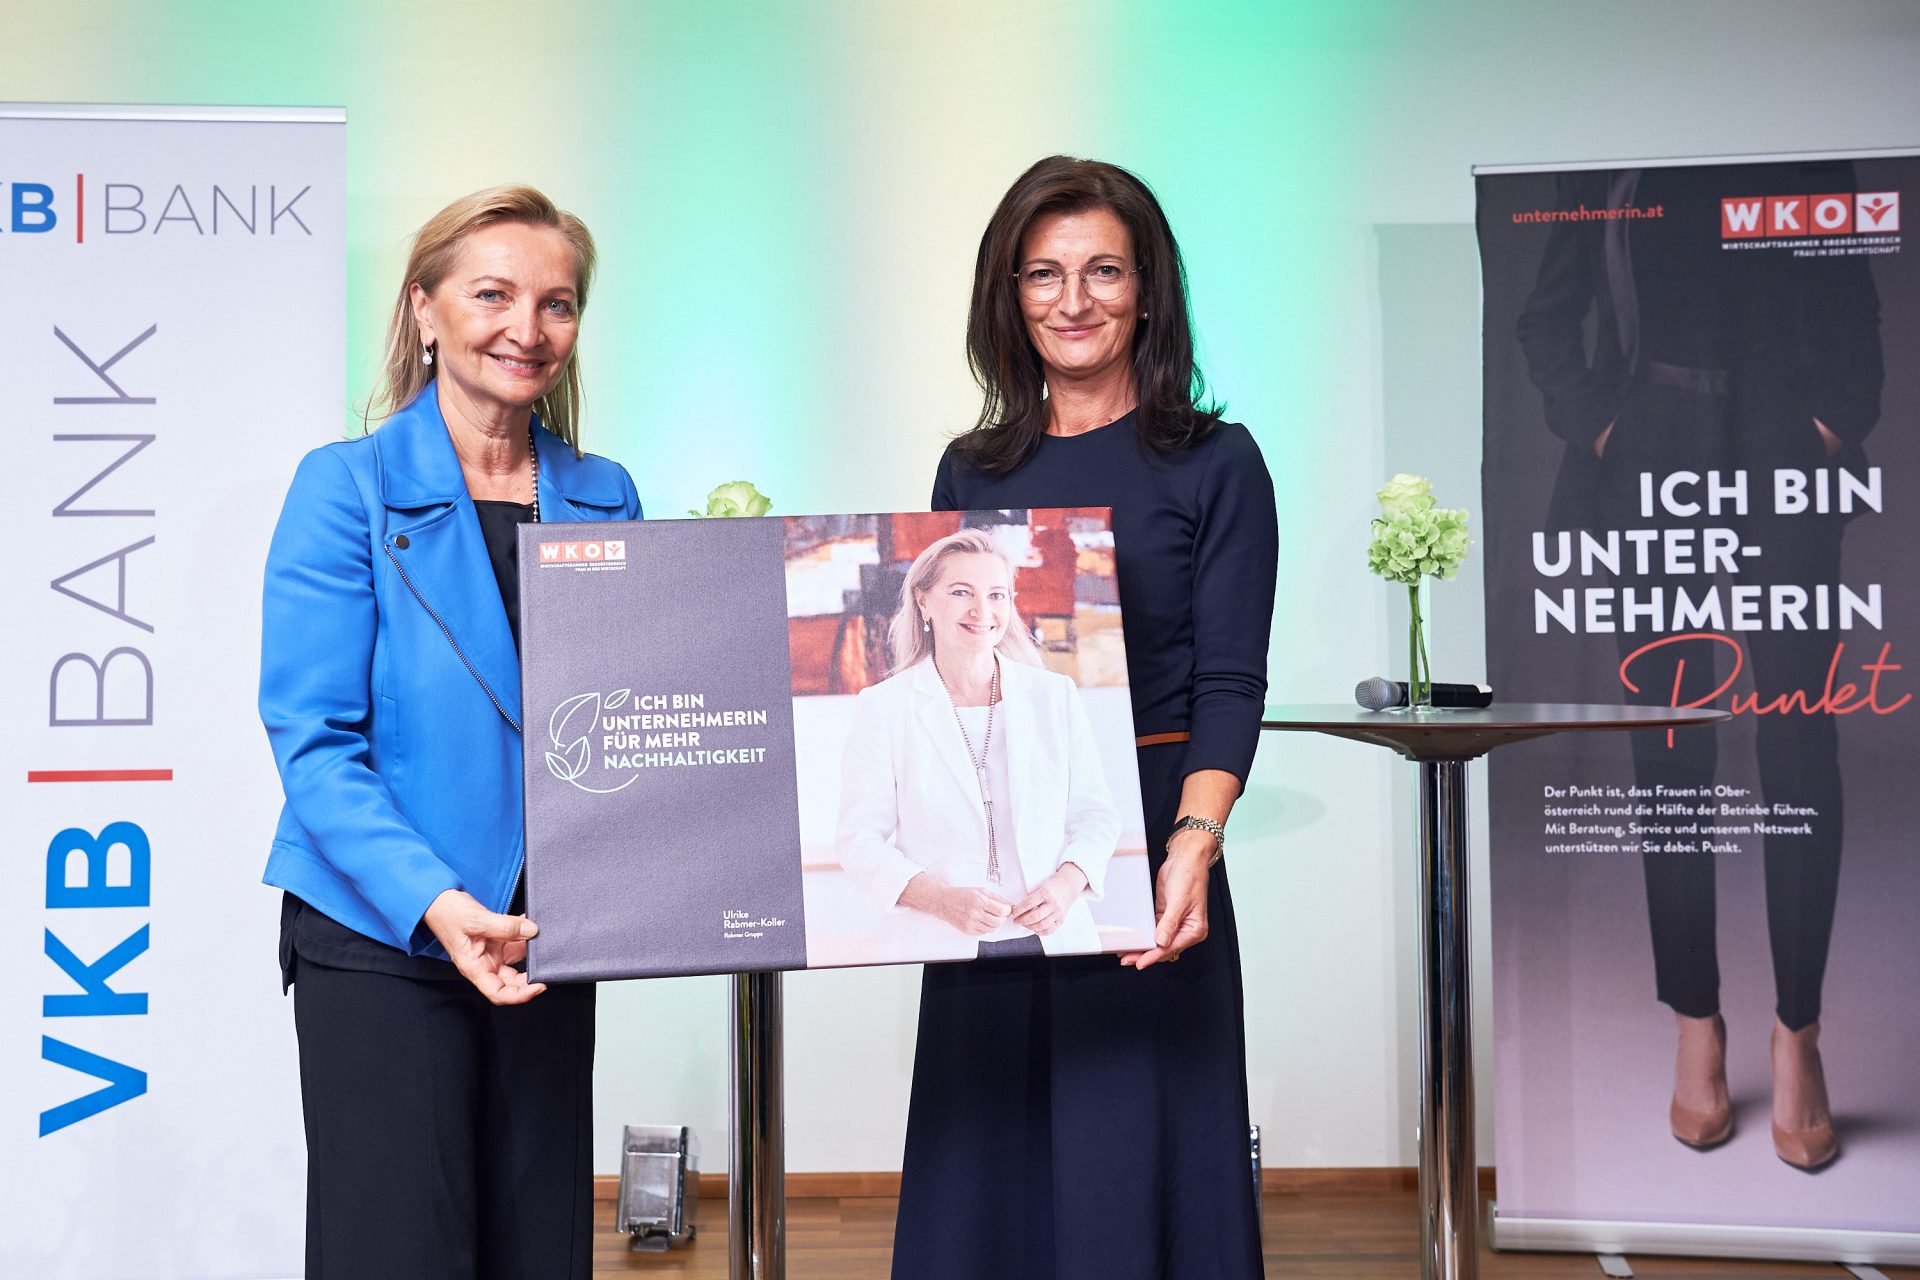 Ulrike Rabmer-Koller is an entrepreneur for more sustainability